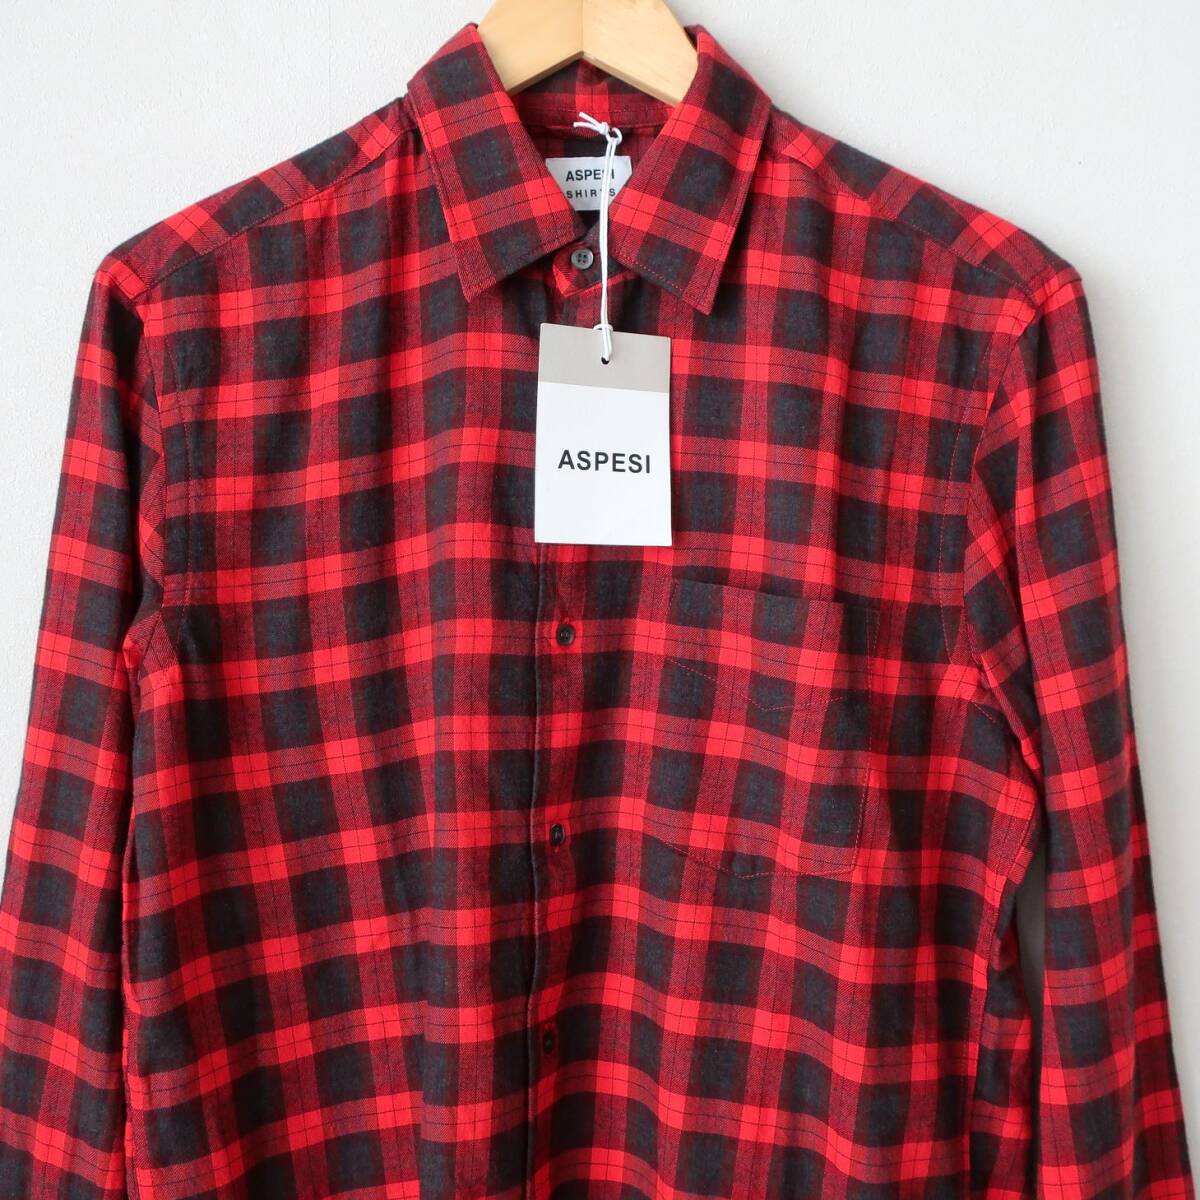 新品 未使用 ASPESI アスペジ ネルシャツ チェック シャツ 長袖 レッド ブラック 赤 ボタンシャツ トップス メンズ Sサイズ ゆったり目 